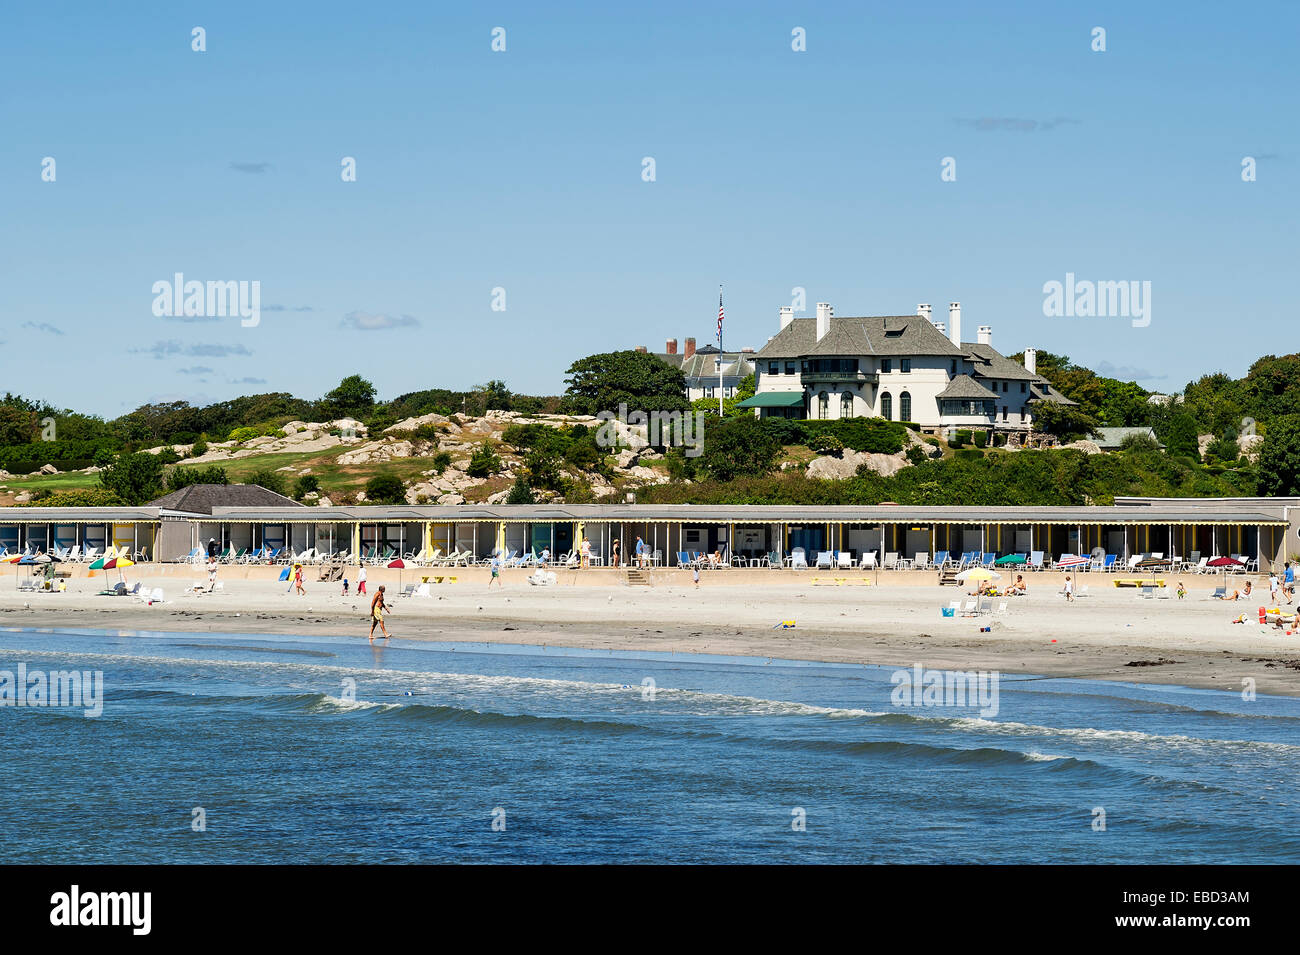 Schizzando la spiaggia di roccia Associazione, noto anche come spiaggia Bailey è un elite spiaggia privata e club a Newport, Rhode Island, STATI UNITI D'AMERICA Foto Stock